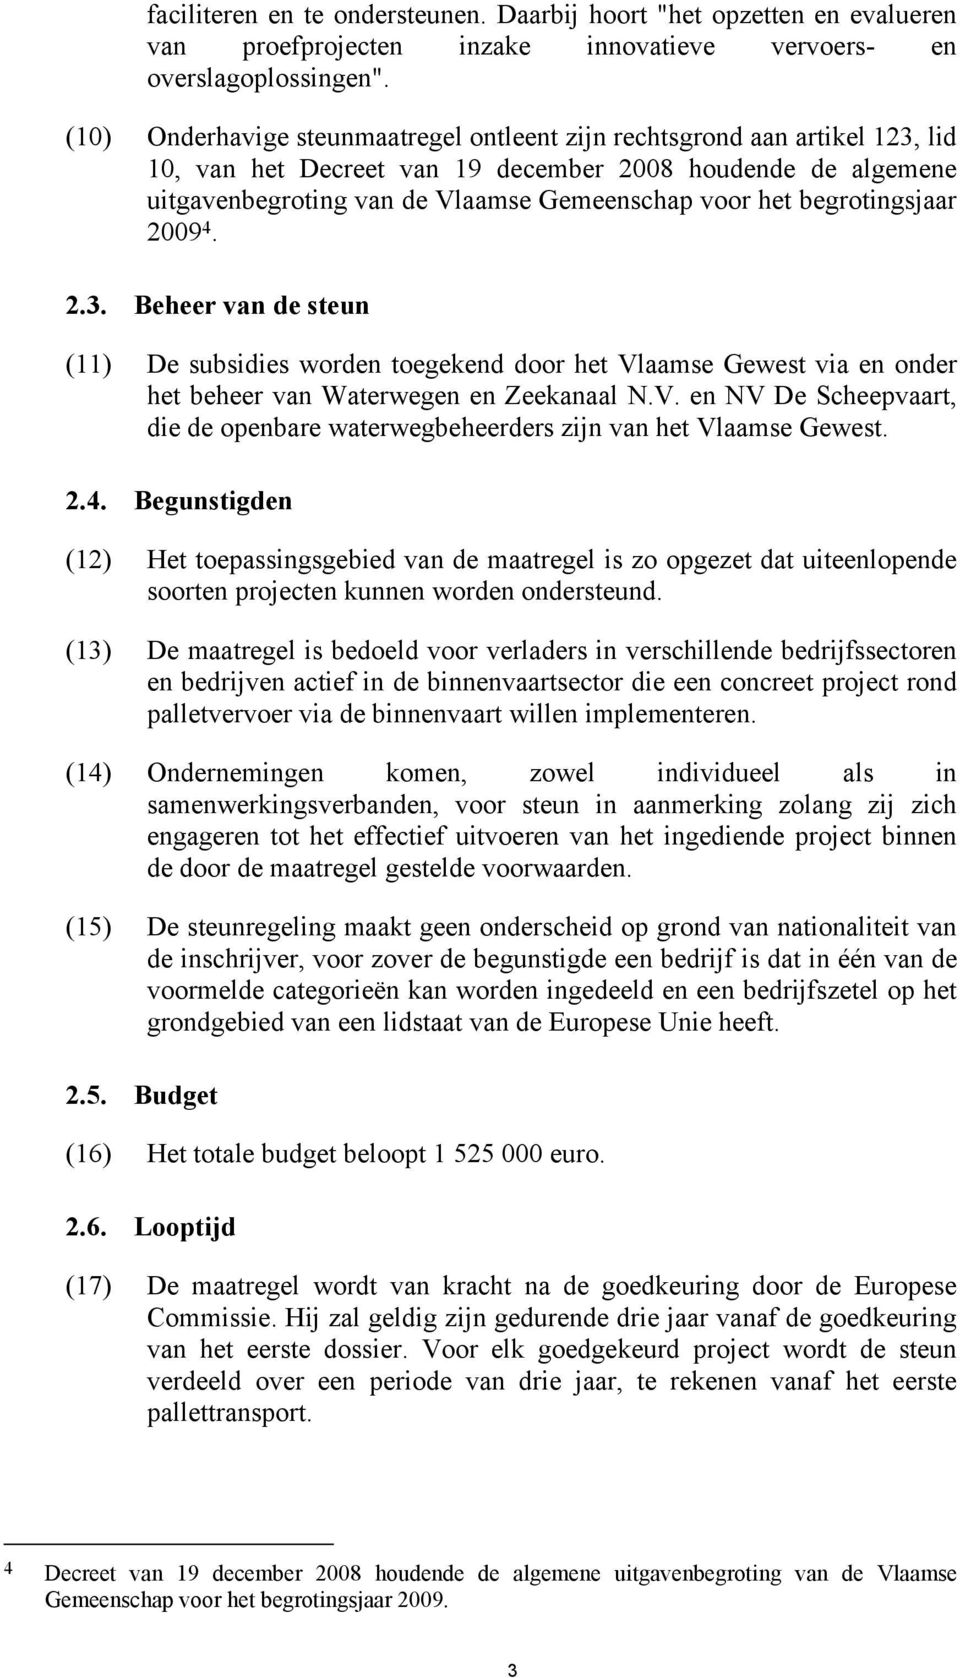 begrotingsjaar 2009 4. 2.3. Beheer van de steun (11) De subsidies worden toegekend door het Vlaamse Gewest via en onder het beheer van Waterwegen en Zeekanaal N.V. en NV De Scheepvaart, die de openbare waterwegbeheerders zijn van het Vlaamse Gewest.